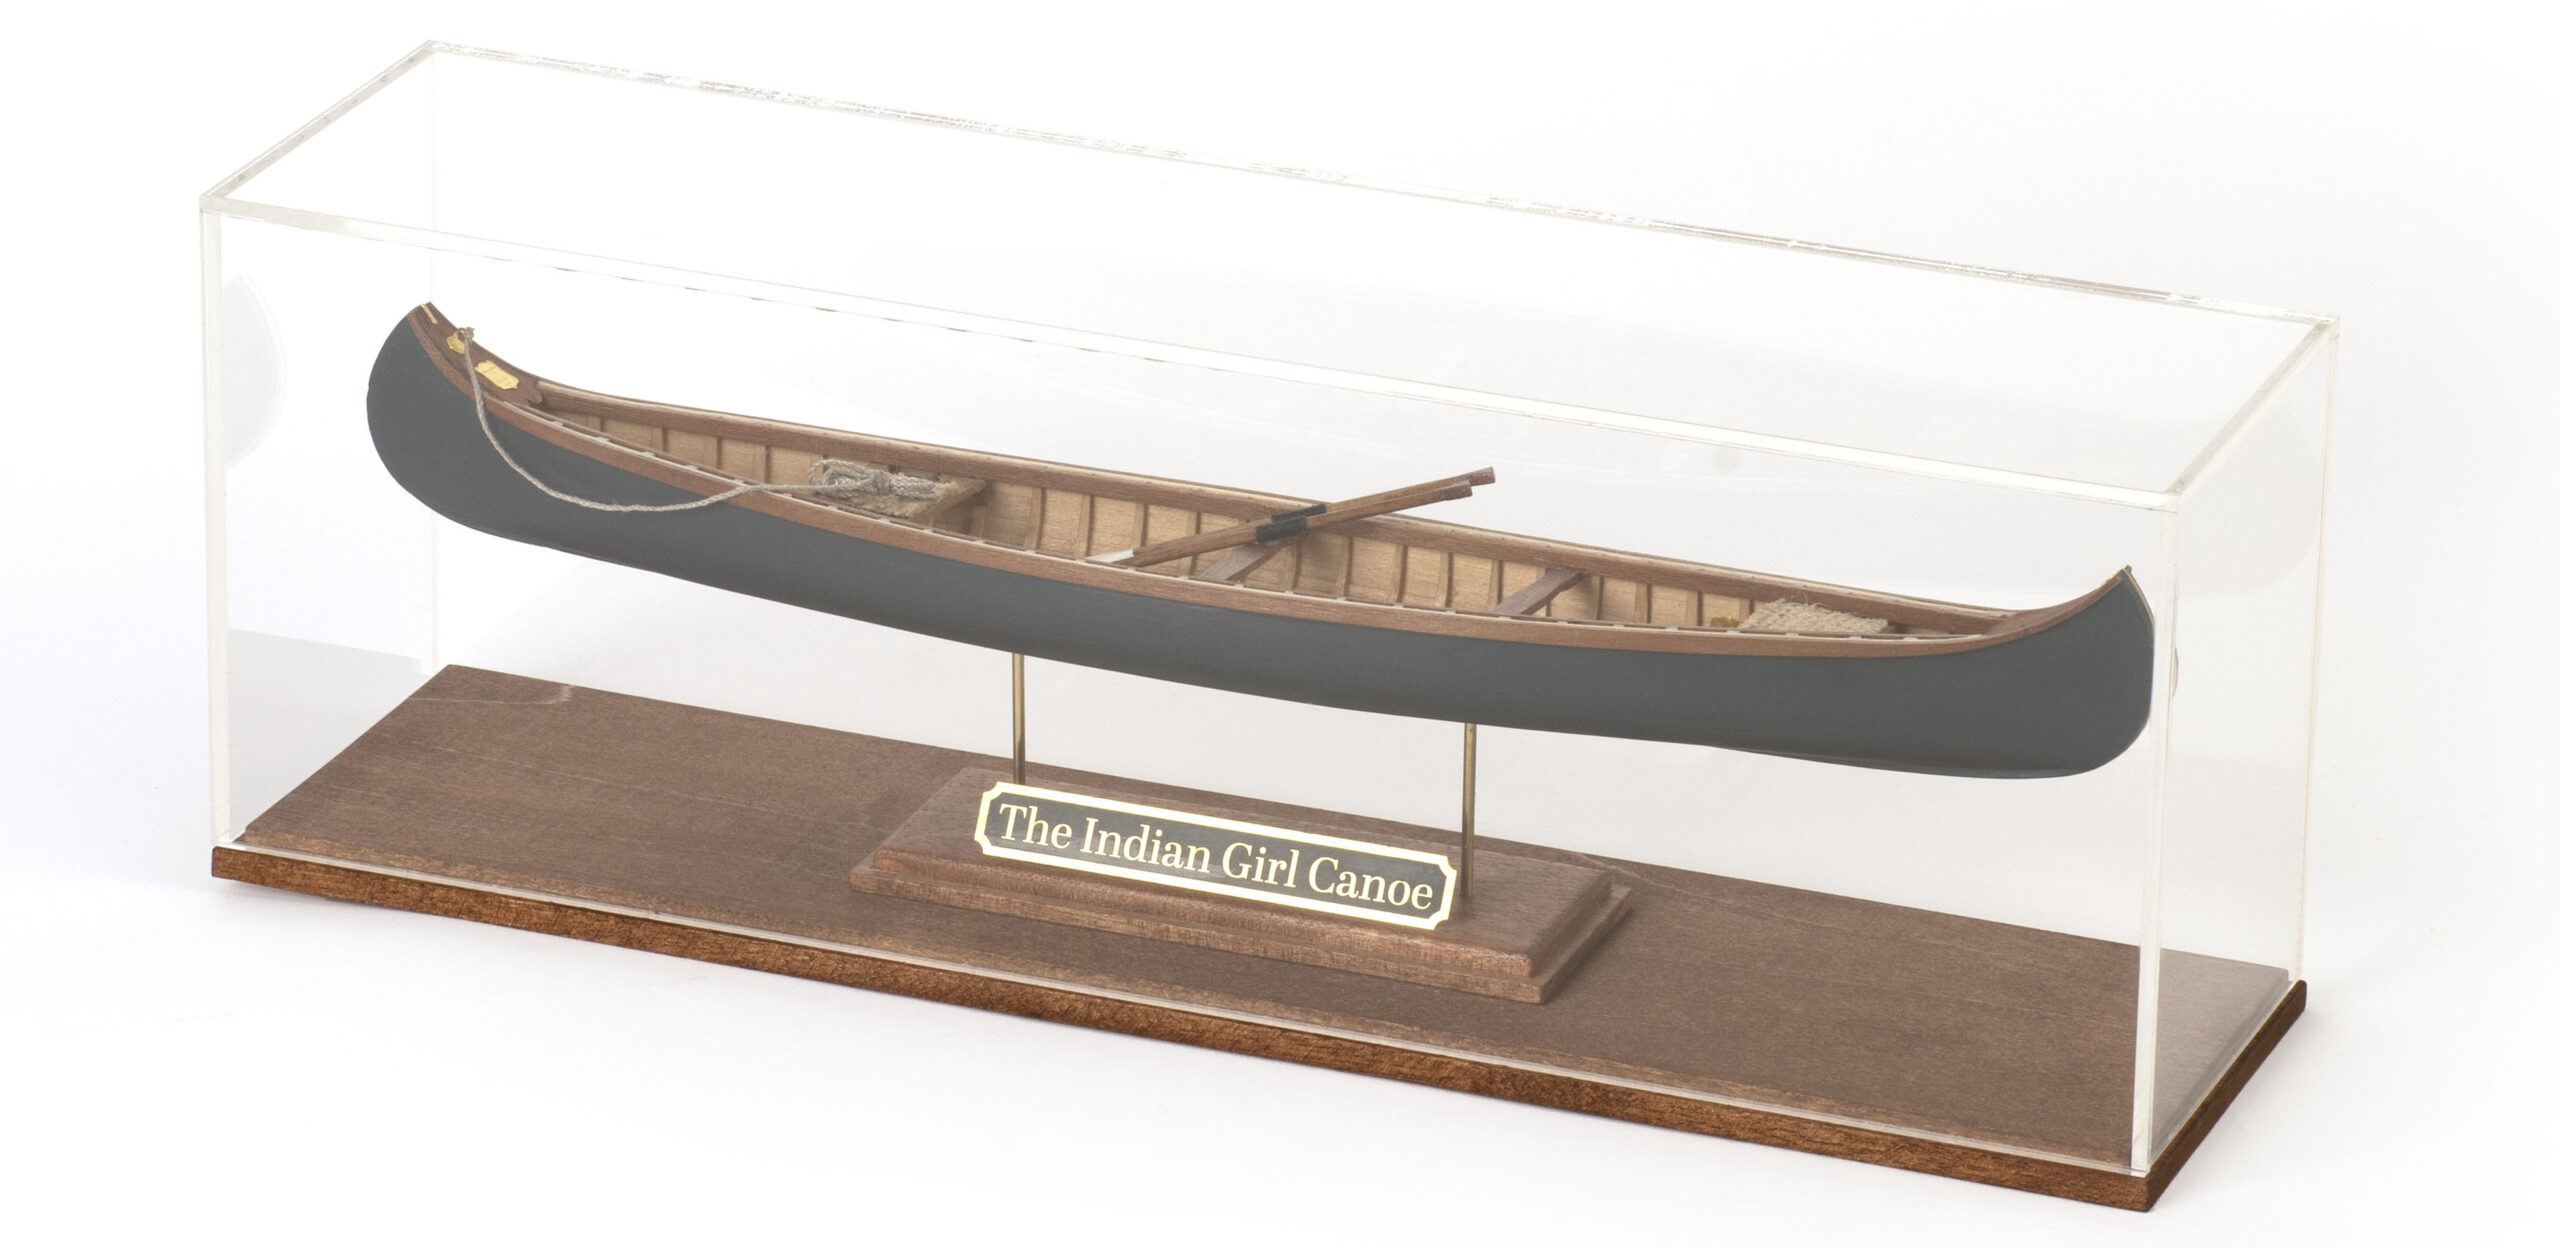 Urne en Méthacrylate 3mm d'Épaisseur pour Maquette Indian Girl Canoe (19000-AS) par Artesanía Latina.